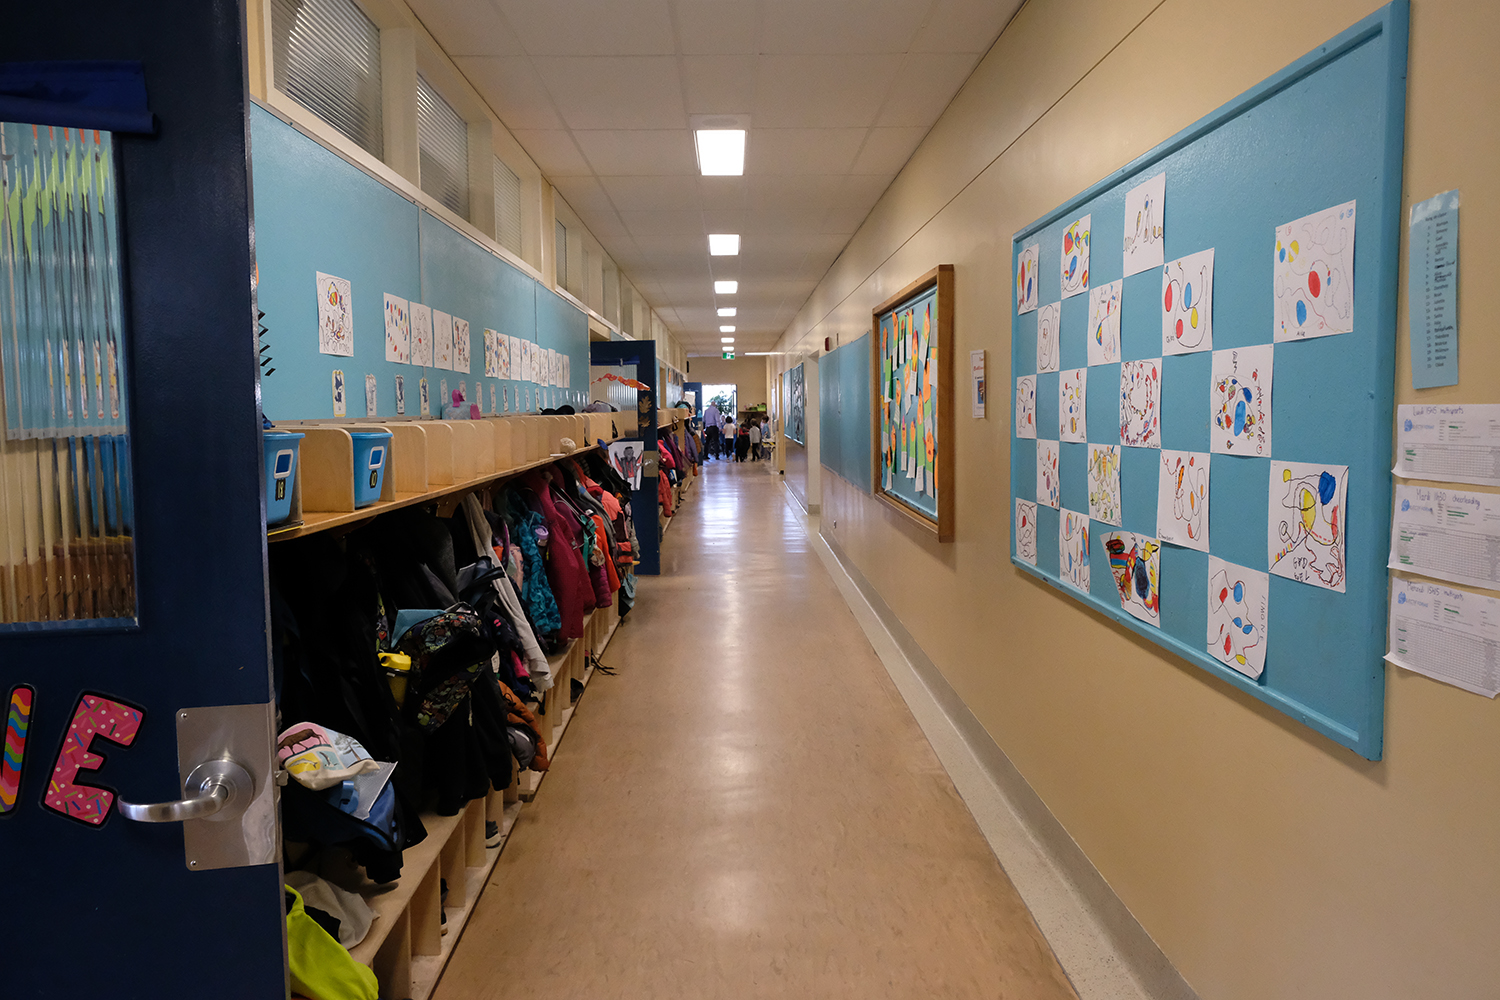 Un couloir de l’école © Globe Reporters